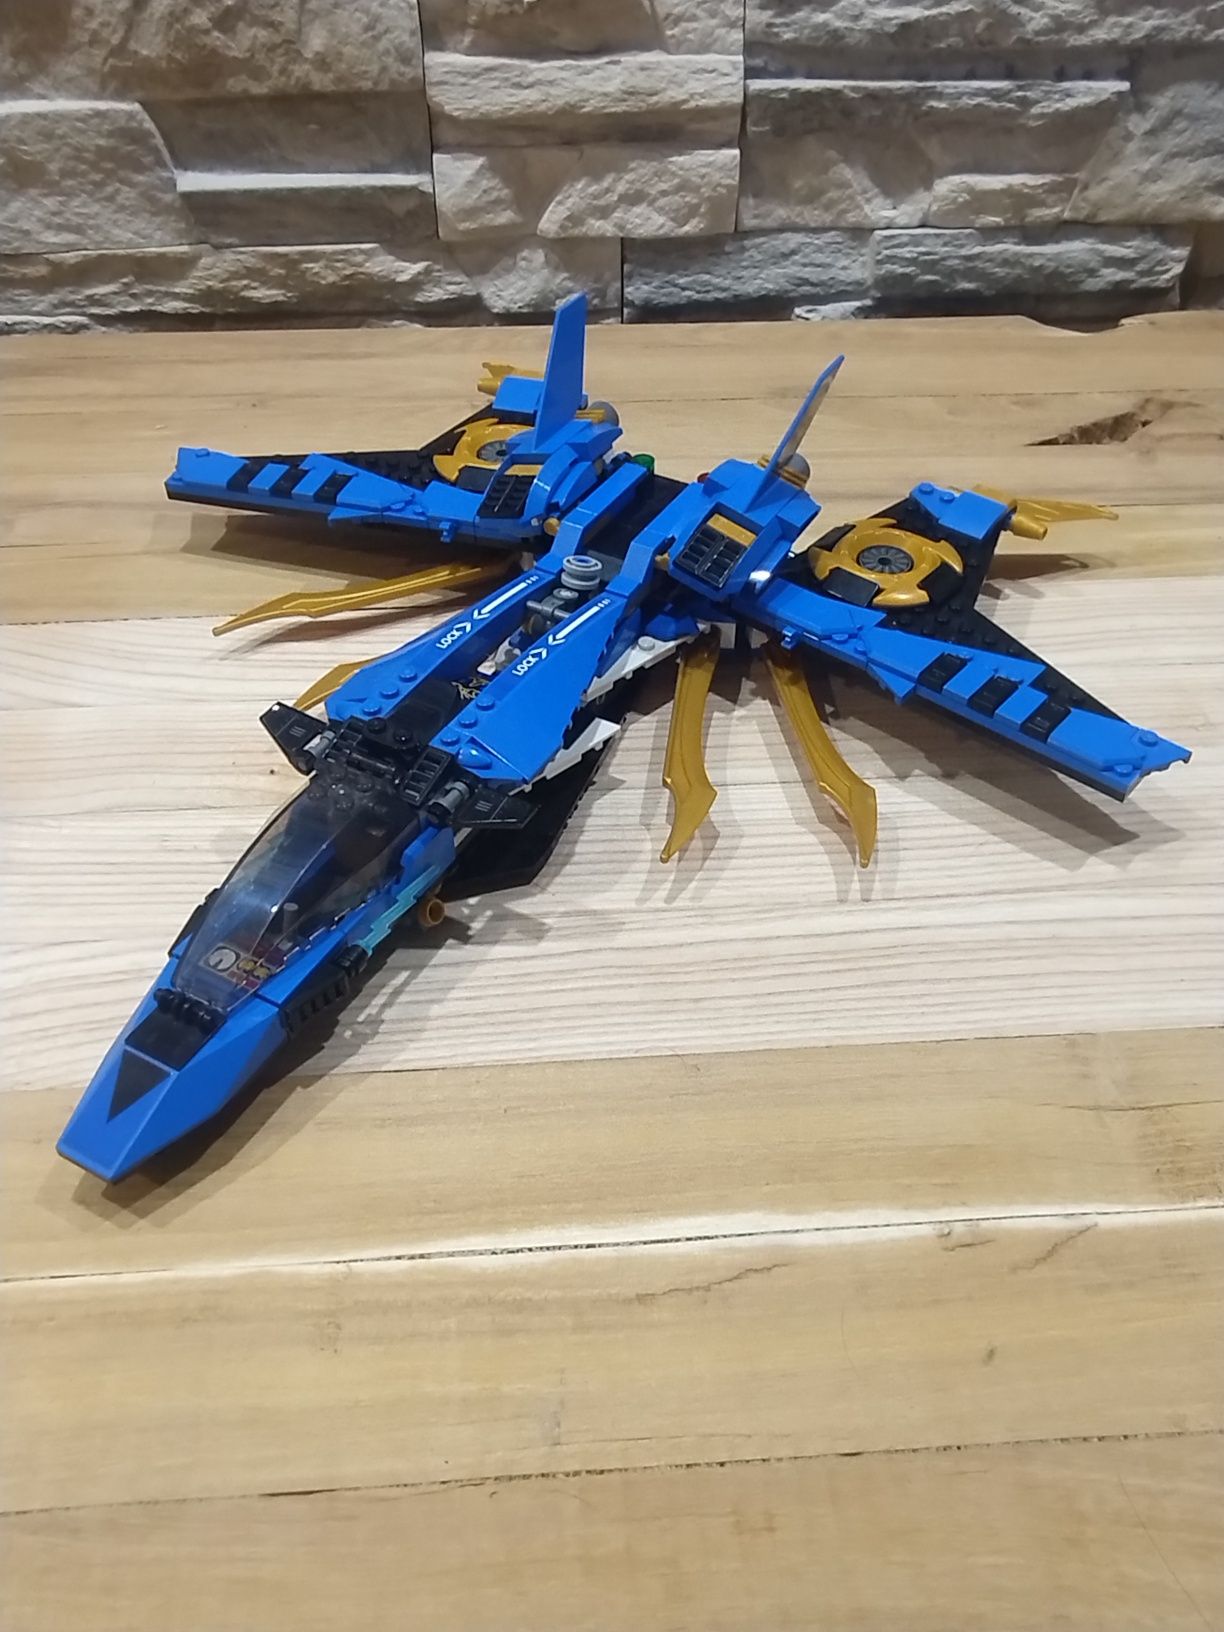 Klocki LEGO ninjago 70668 burzowy myśliwiec Jaya